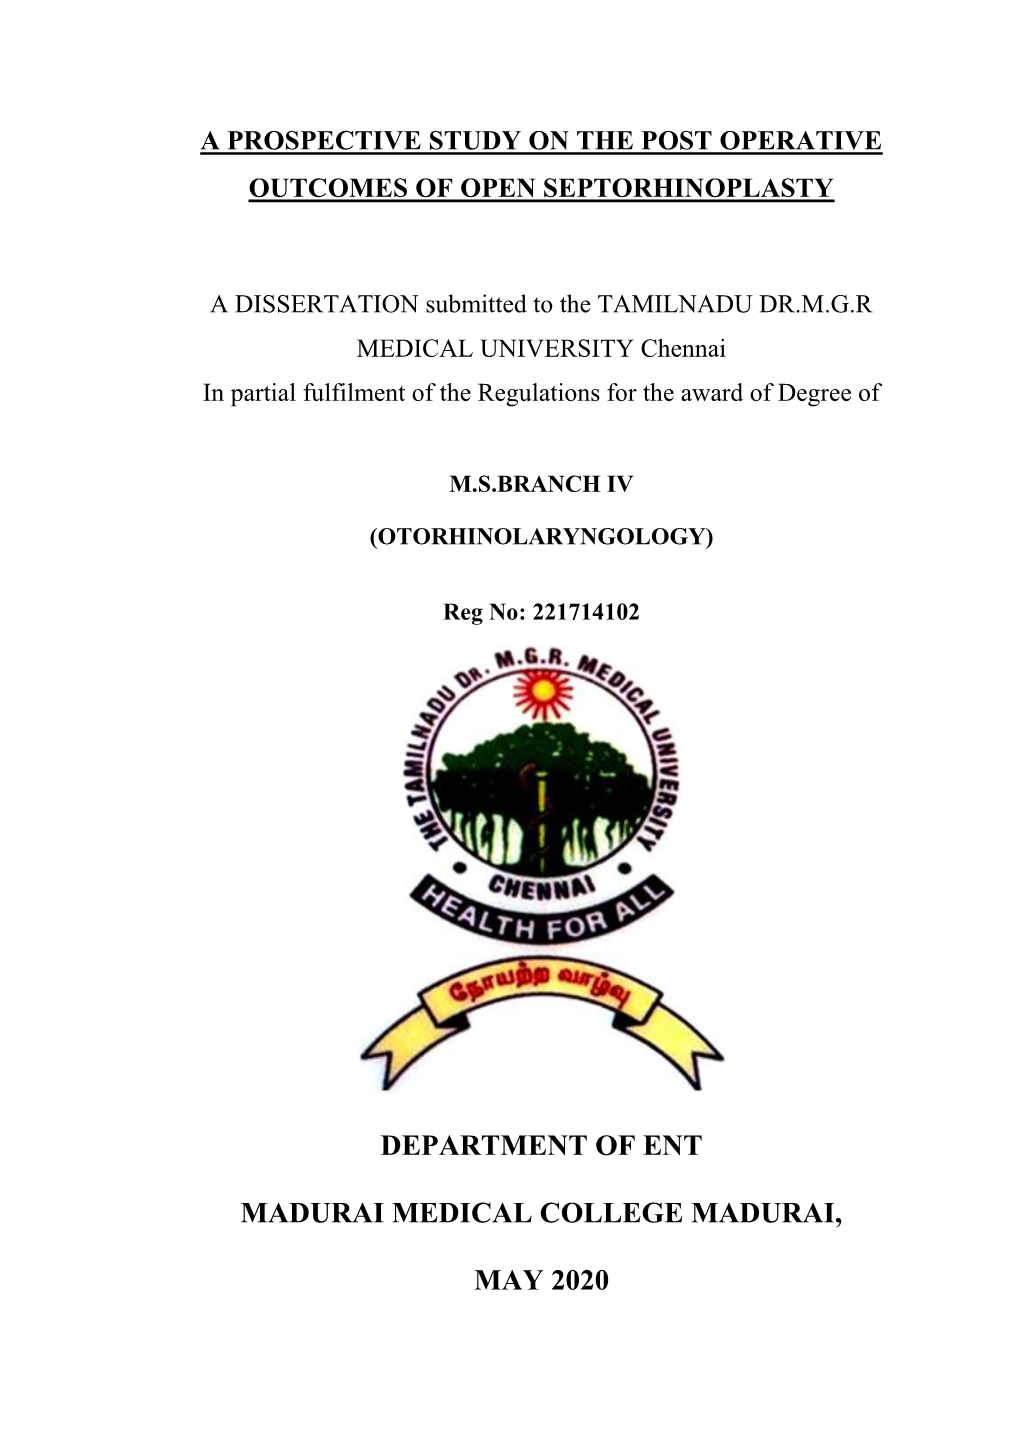 Department of Ent Madurai Medical College Madurai